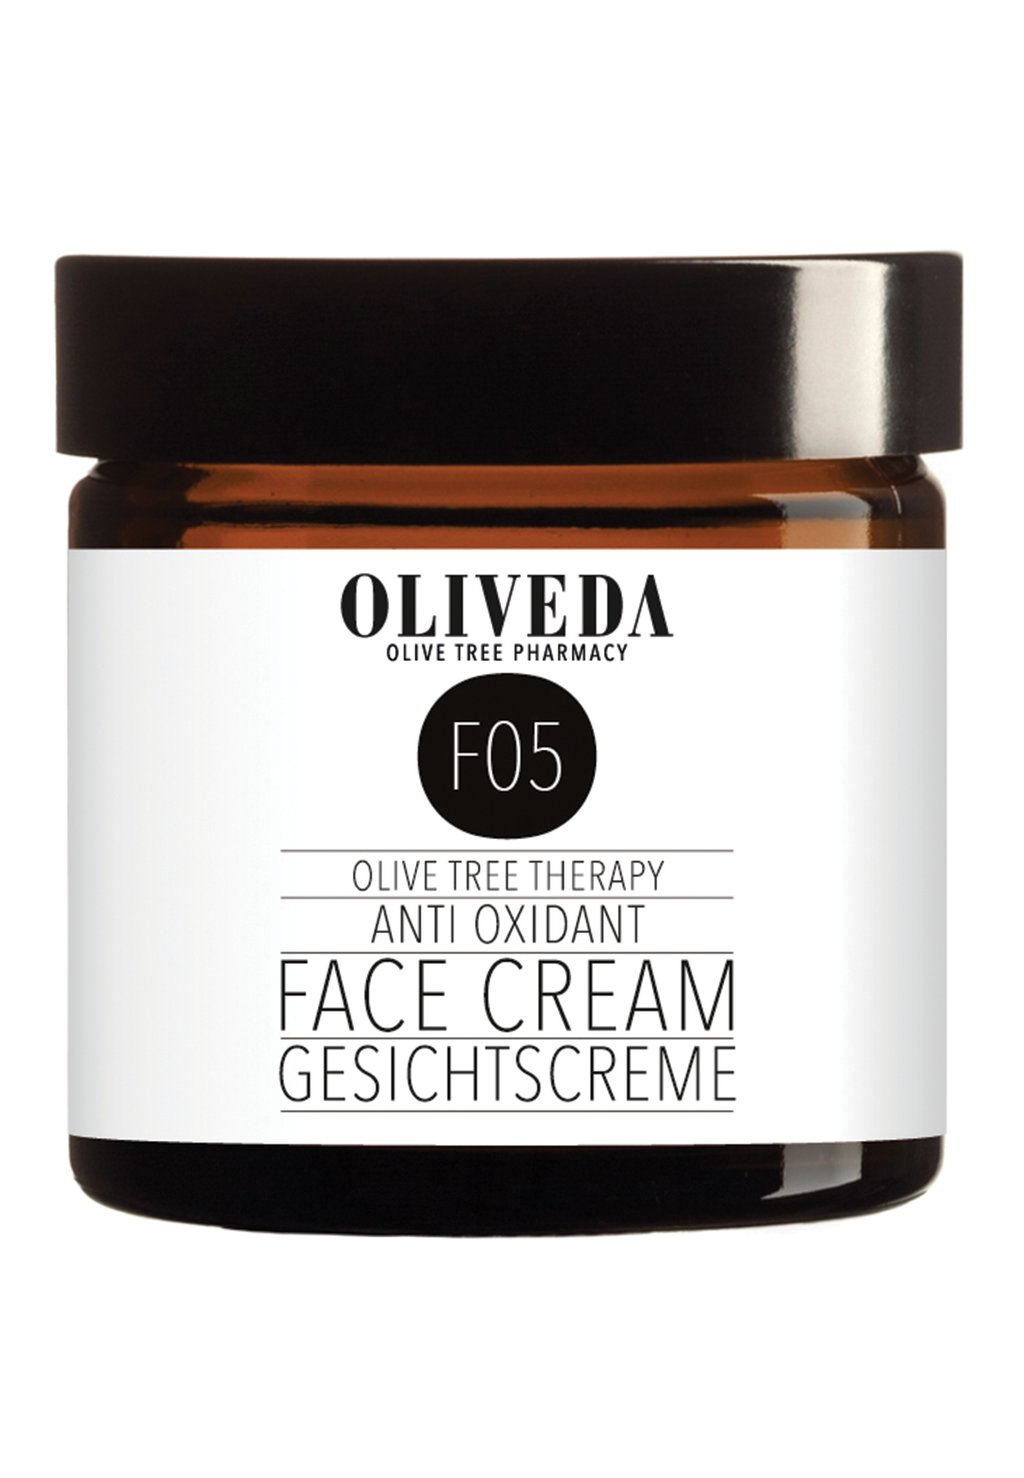 Дневной крем Face Cream Anti Oxidant Oliveda